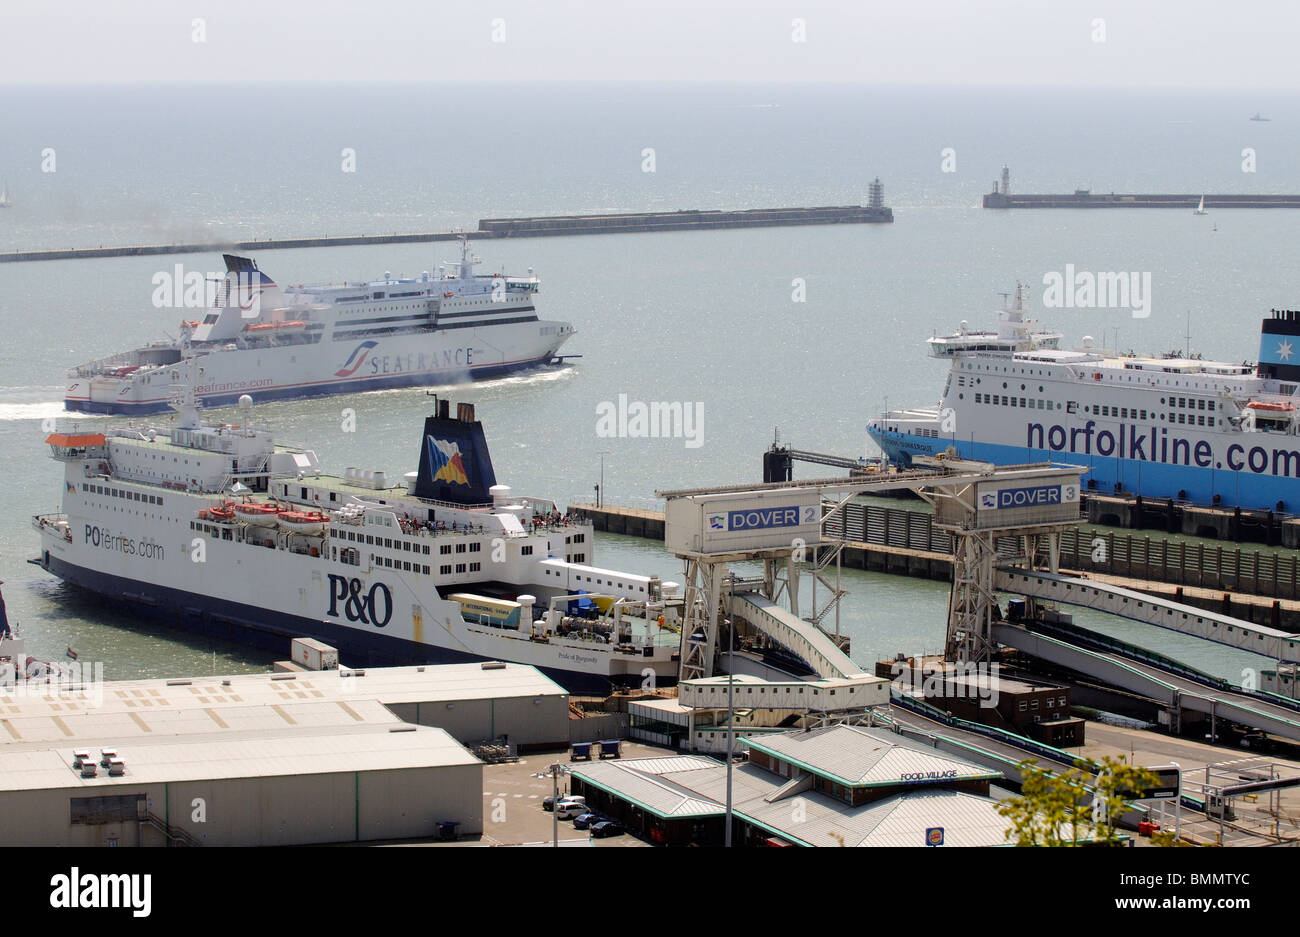 Seafrance azienda cross channel ferry Moliere le manovre in porto di Dover Kent England Regno Unito Foto Stock